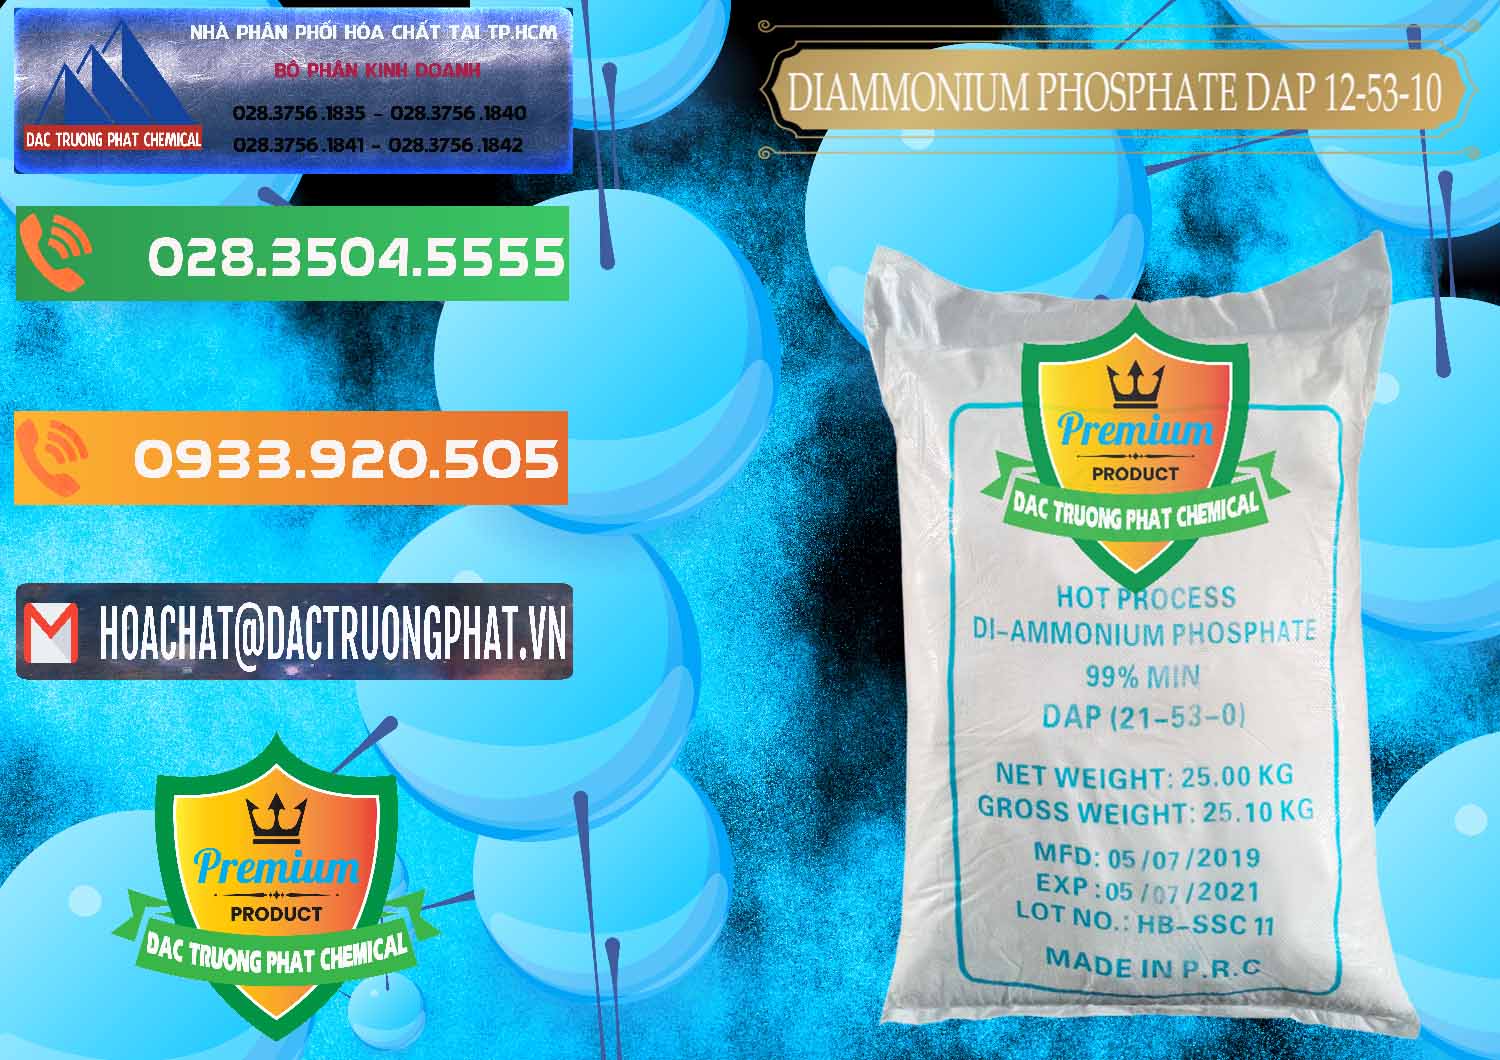 Công ty chuyên bán _ cung ứng DAP - Diammonium Phosphate Trung Quốc China - 0319 - Công ty phân phối - cung ứng hóa chất tại TP.HCM - hoachatxulynuoc.com.vn